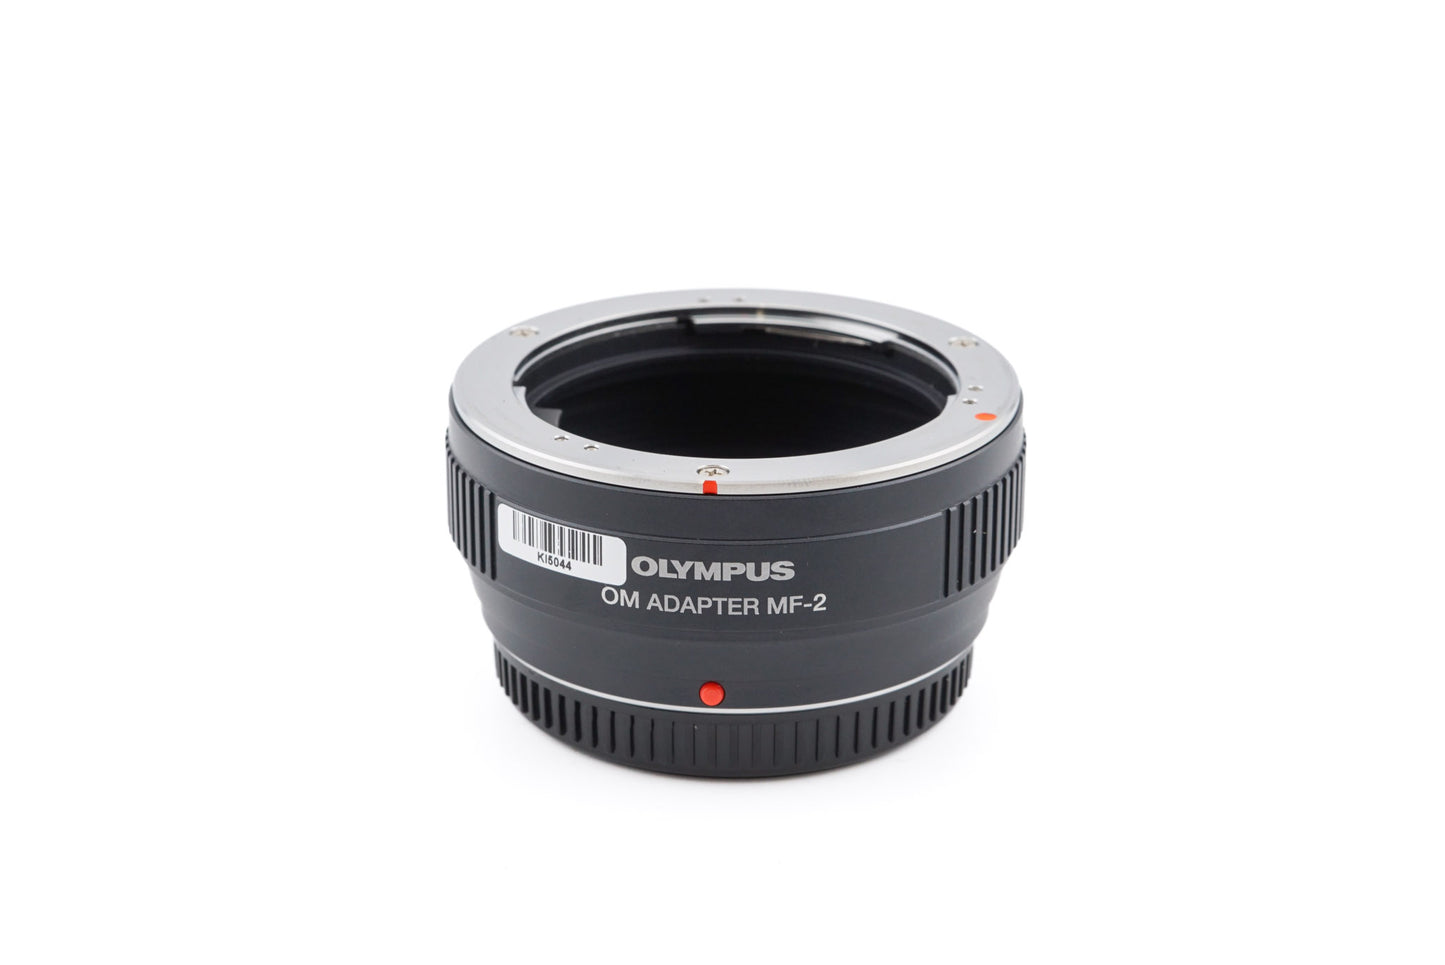 Olympus OM Adapter MF-2 - Lens Adapter